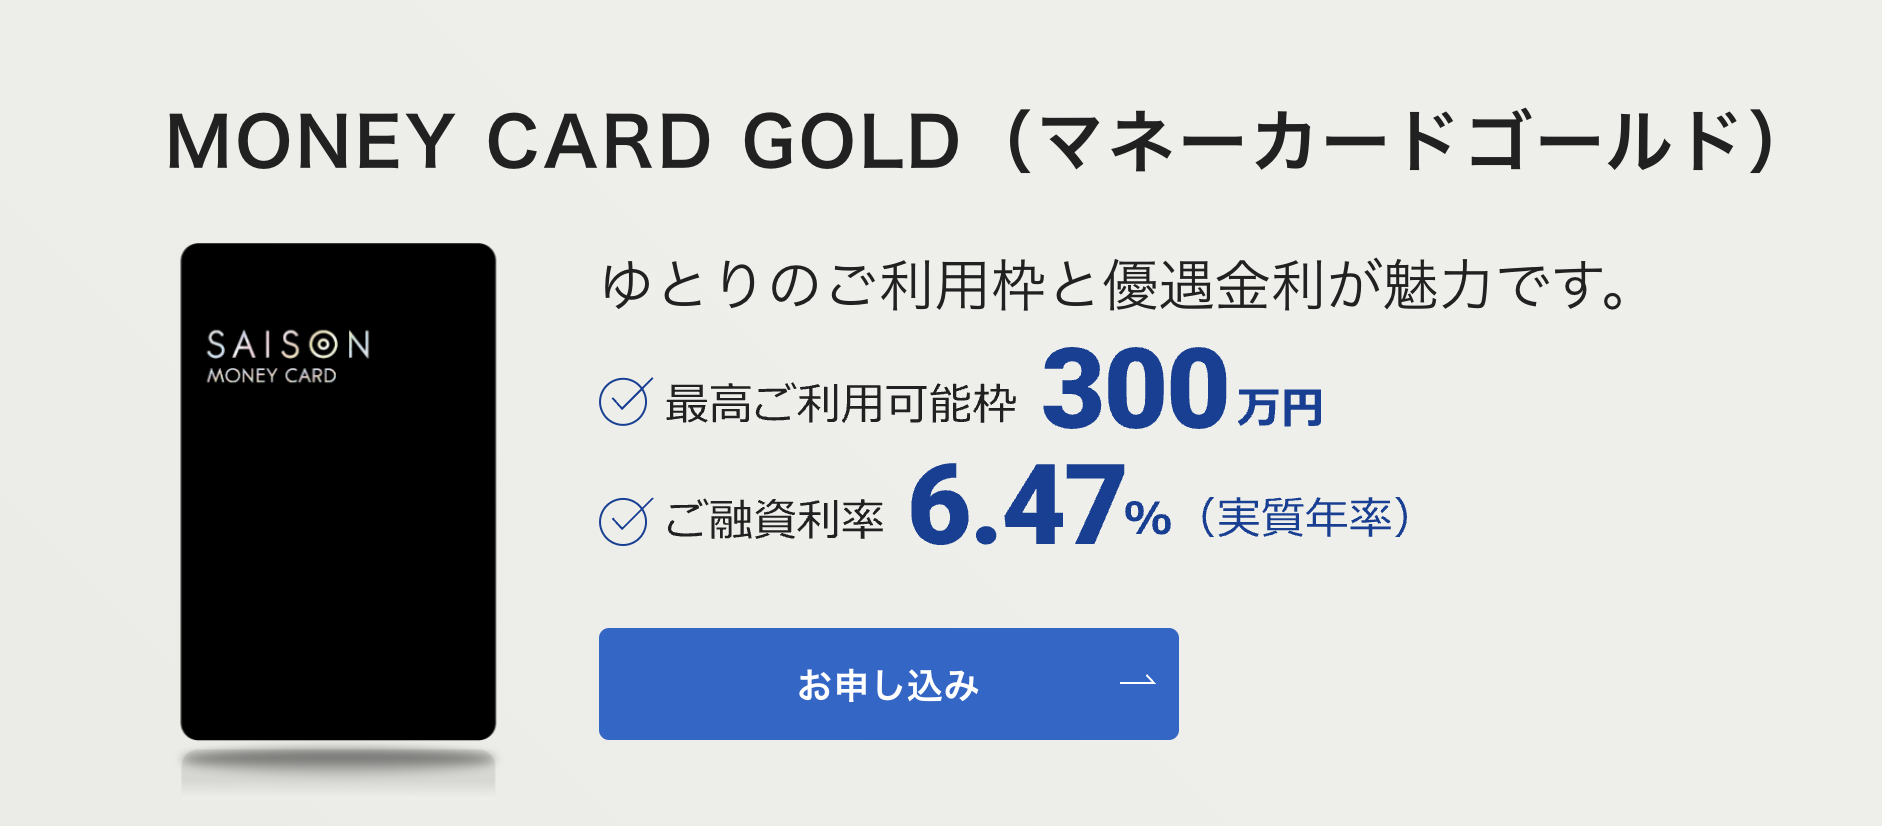 MONEY CARD GOLD_カードローンおすすめ